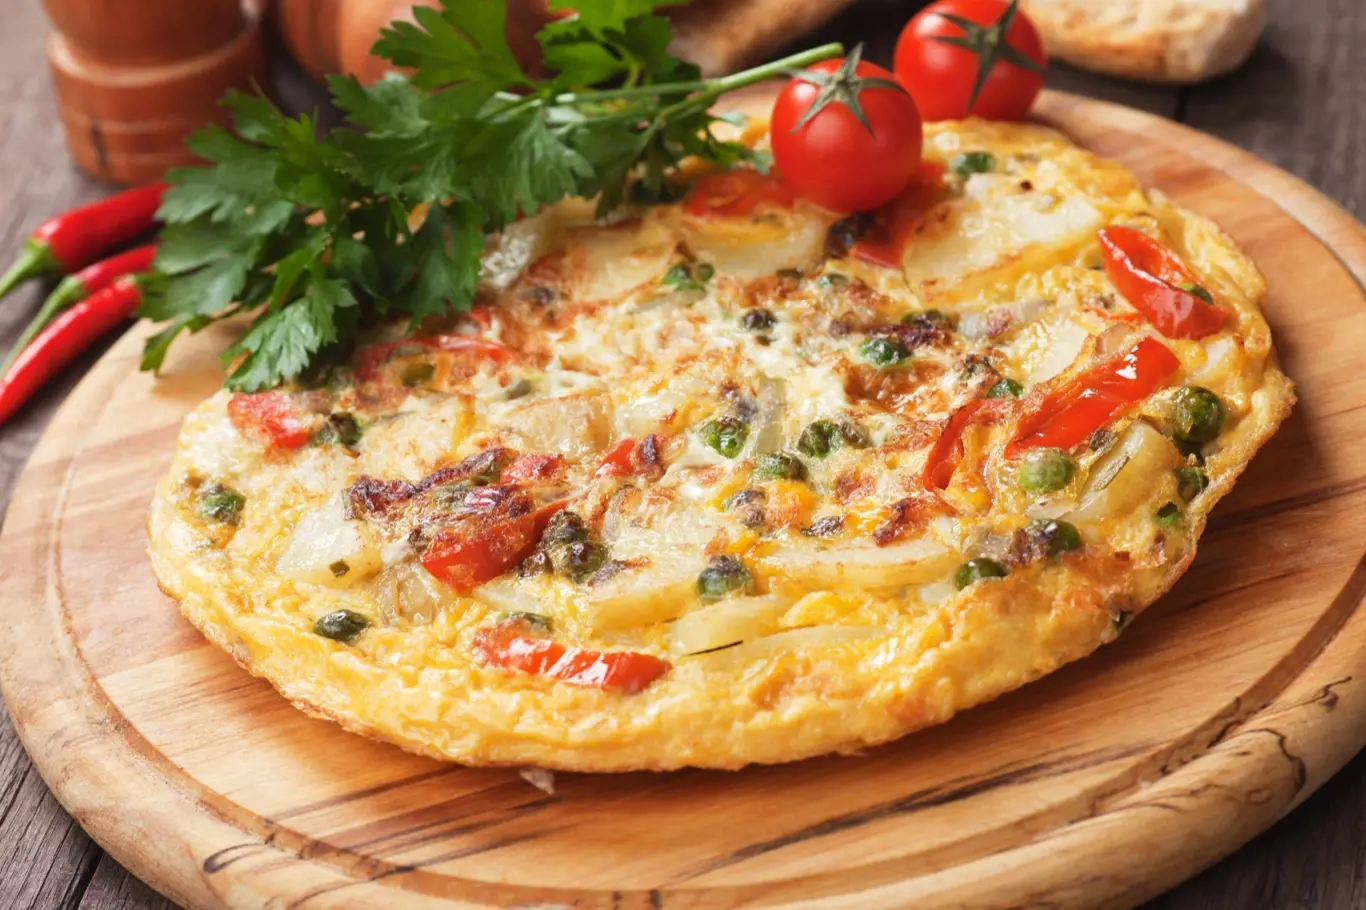 Staré rohlíky nevyhazujte. Udělejte z nich fantastickou rychlou omeletu.